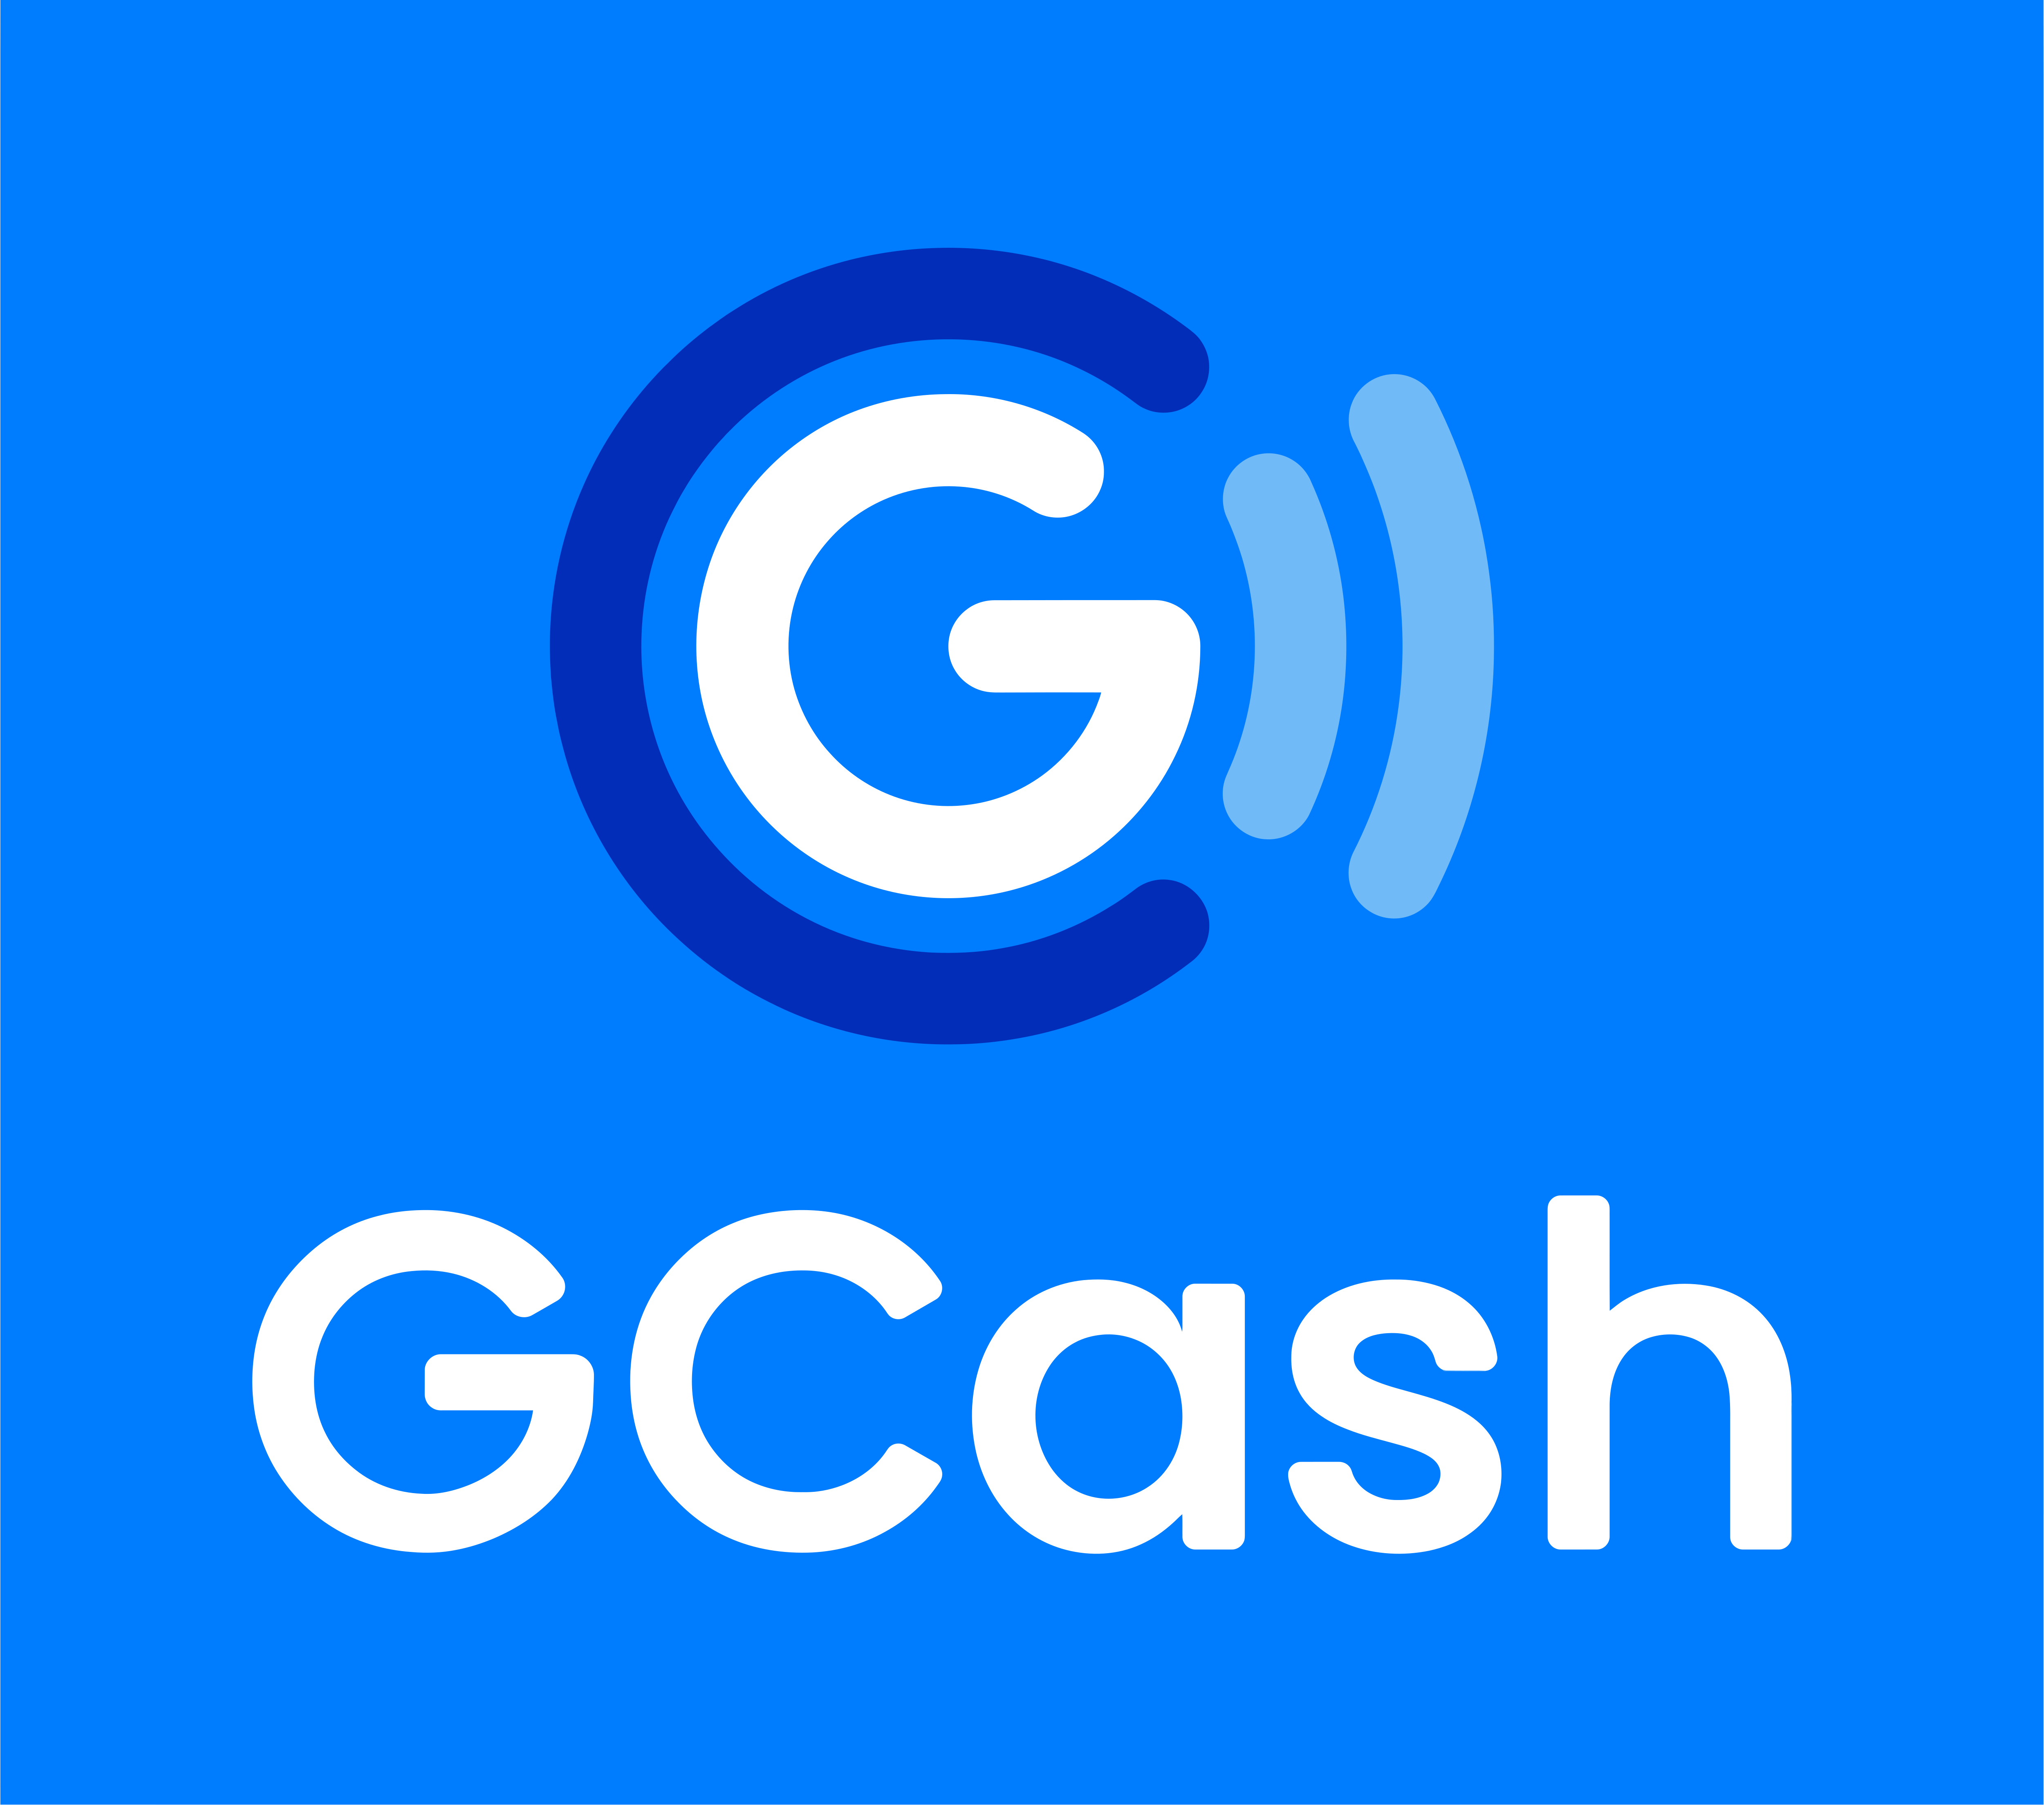 GCash Logo - GCash – Logos Download